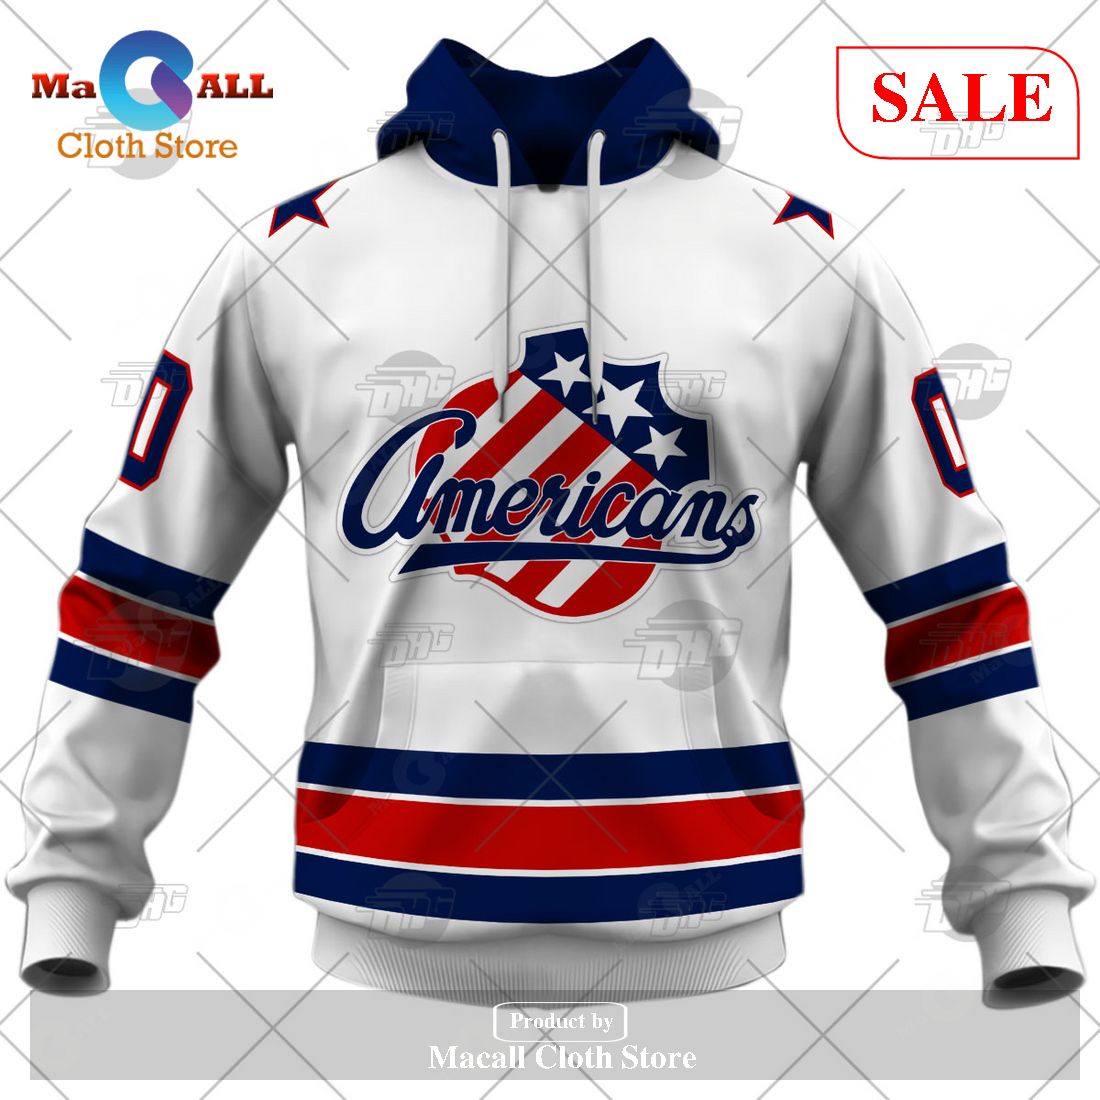 Rochester Americans Minor League Hockey Fan Jerseys for sale